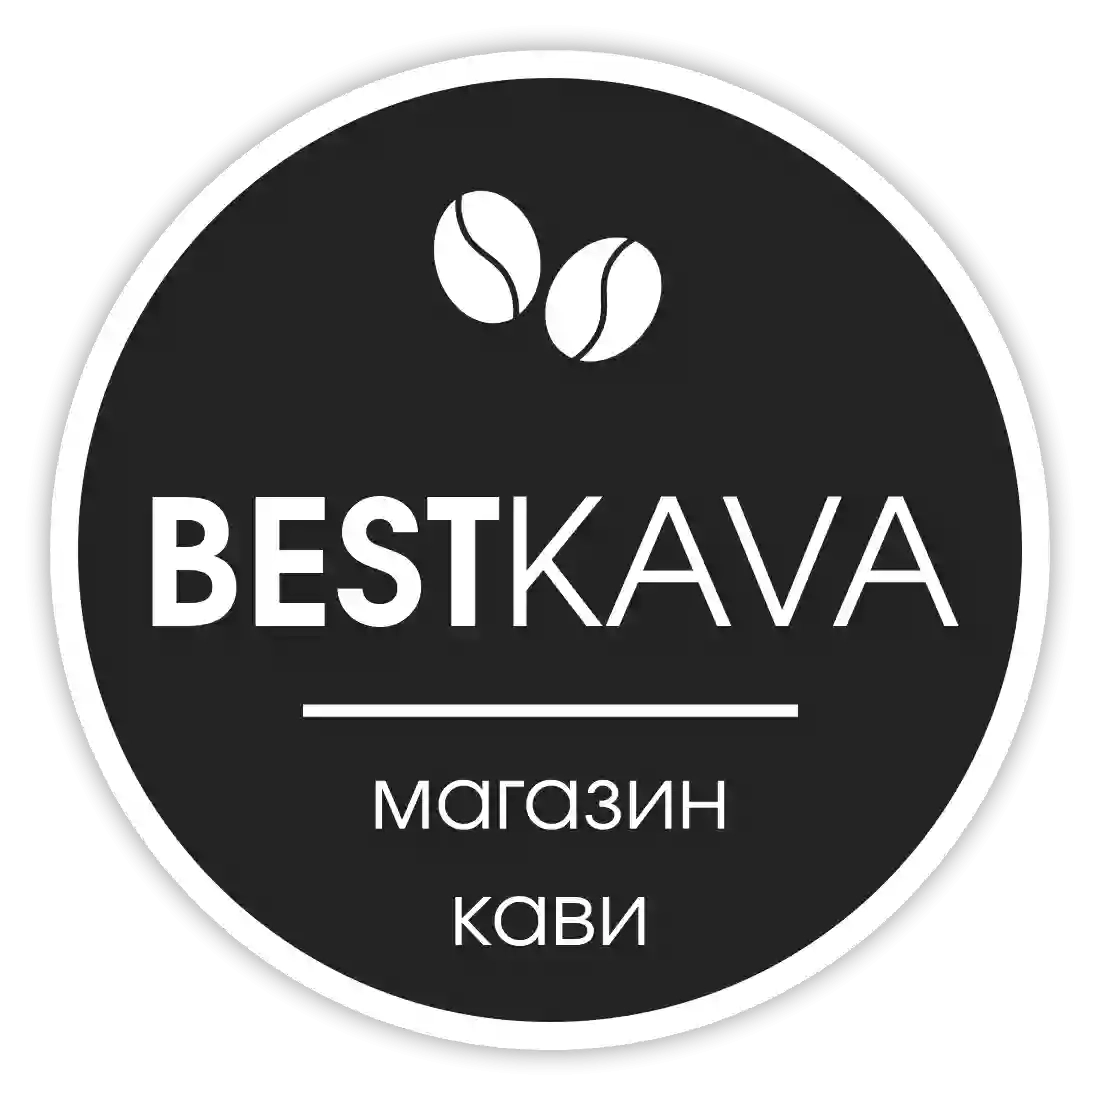 BestKava